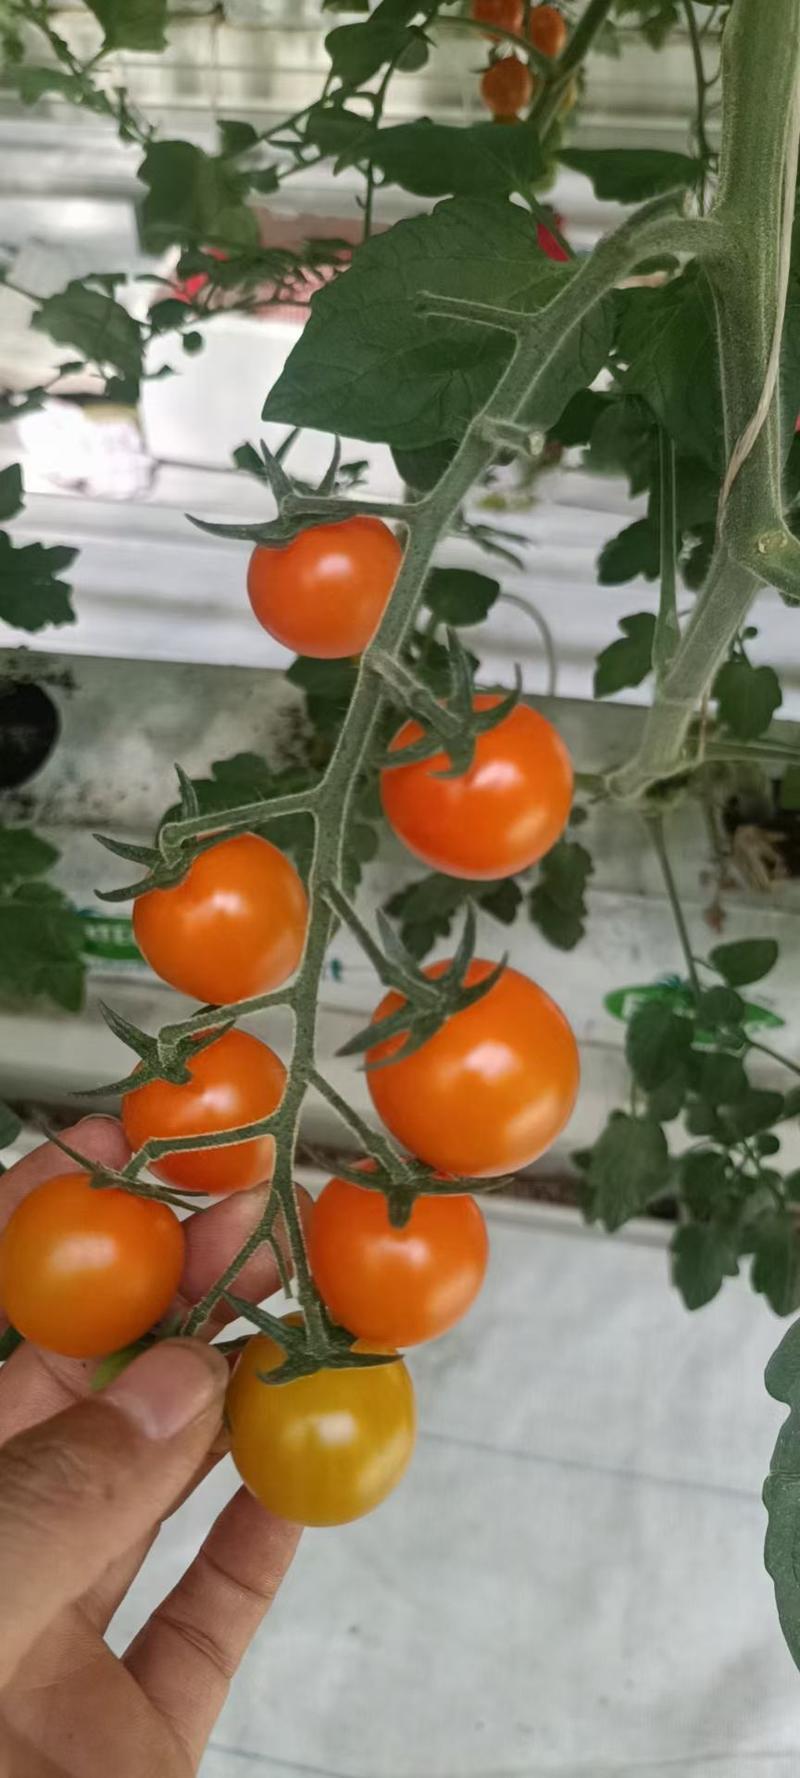 各种特色小番茄